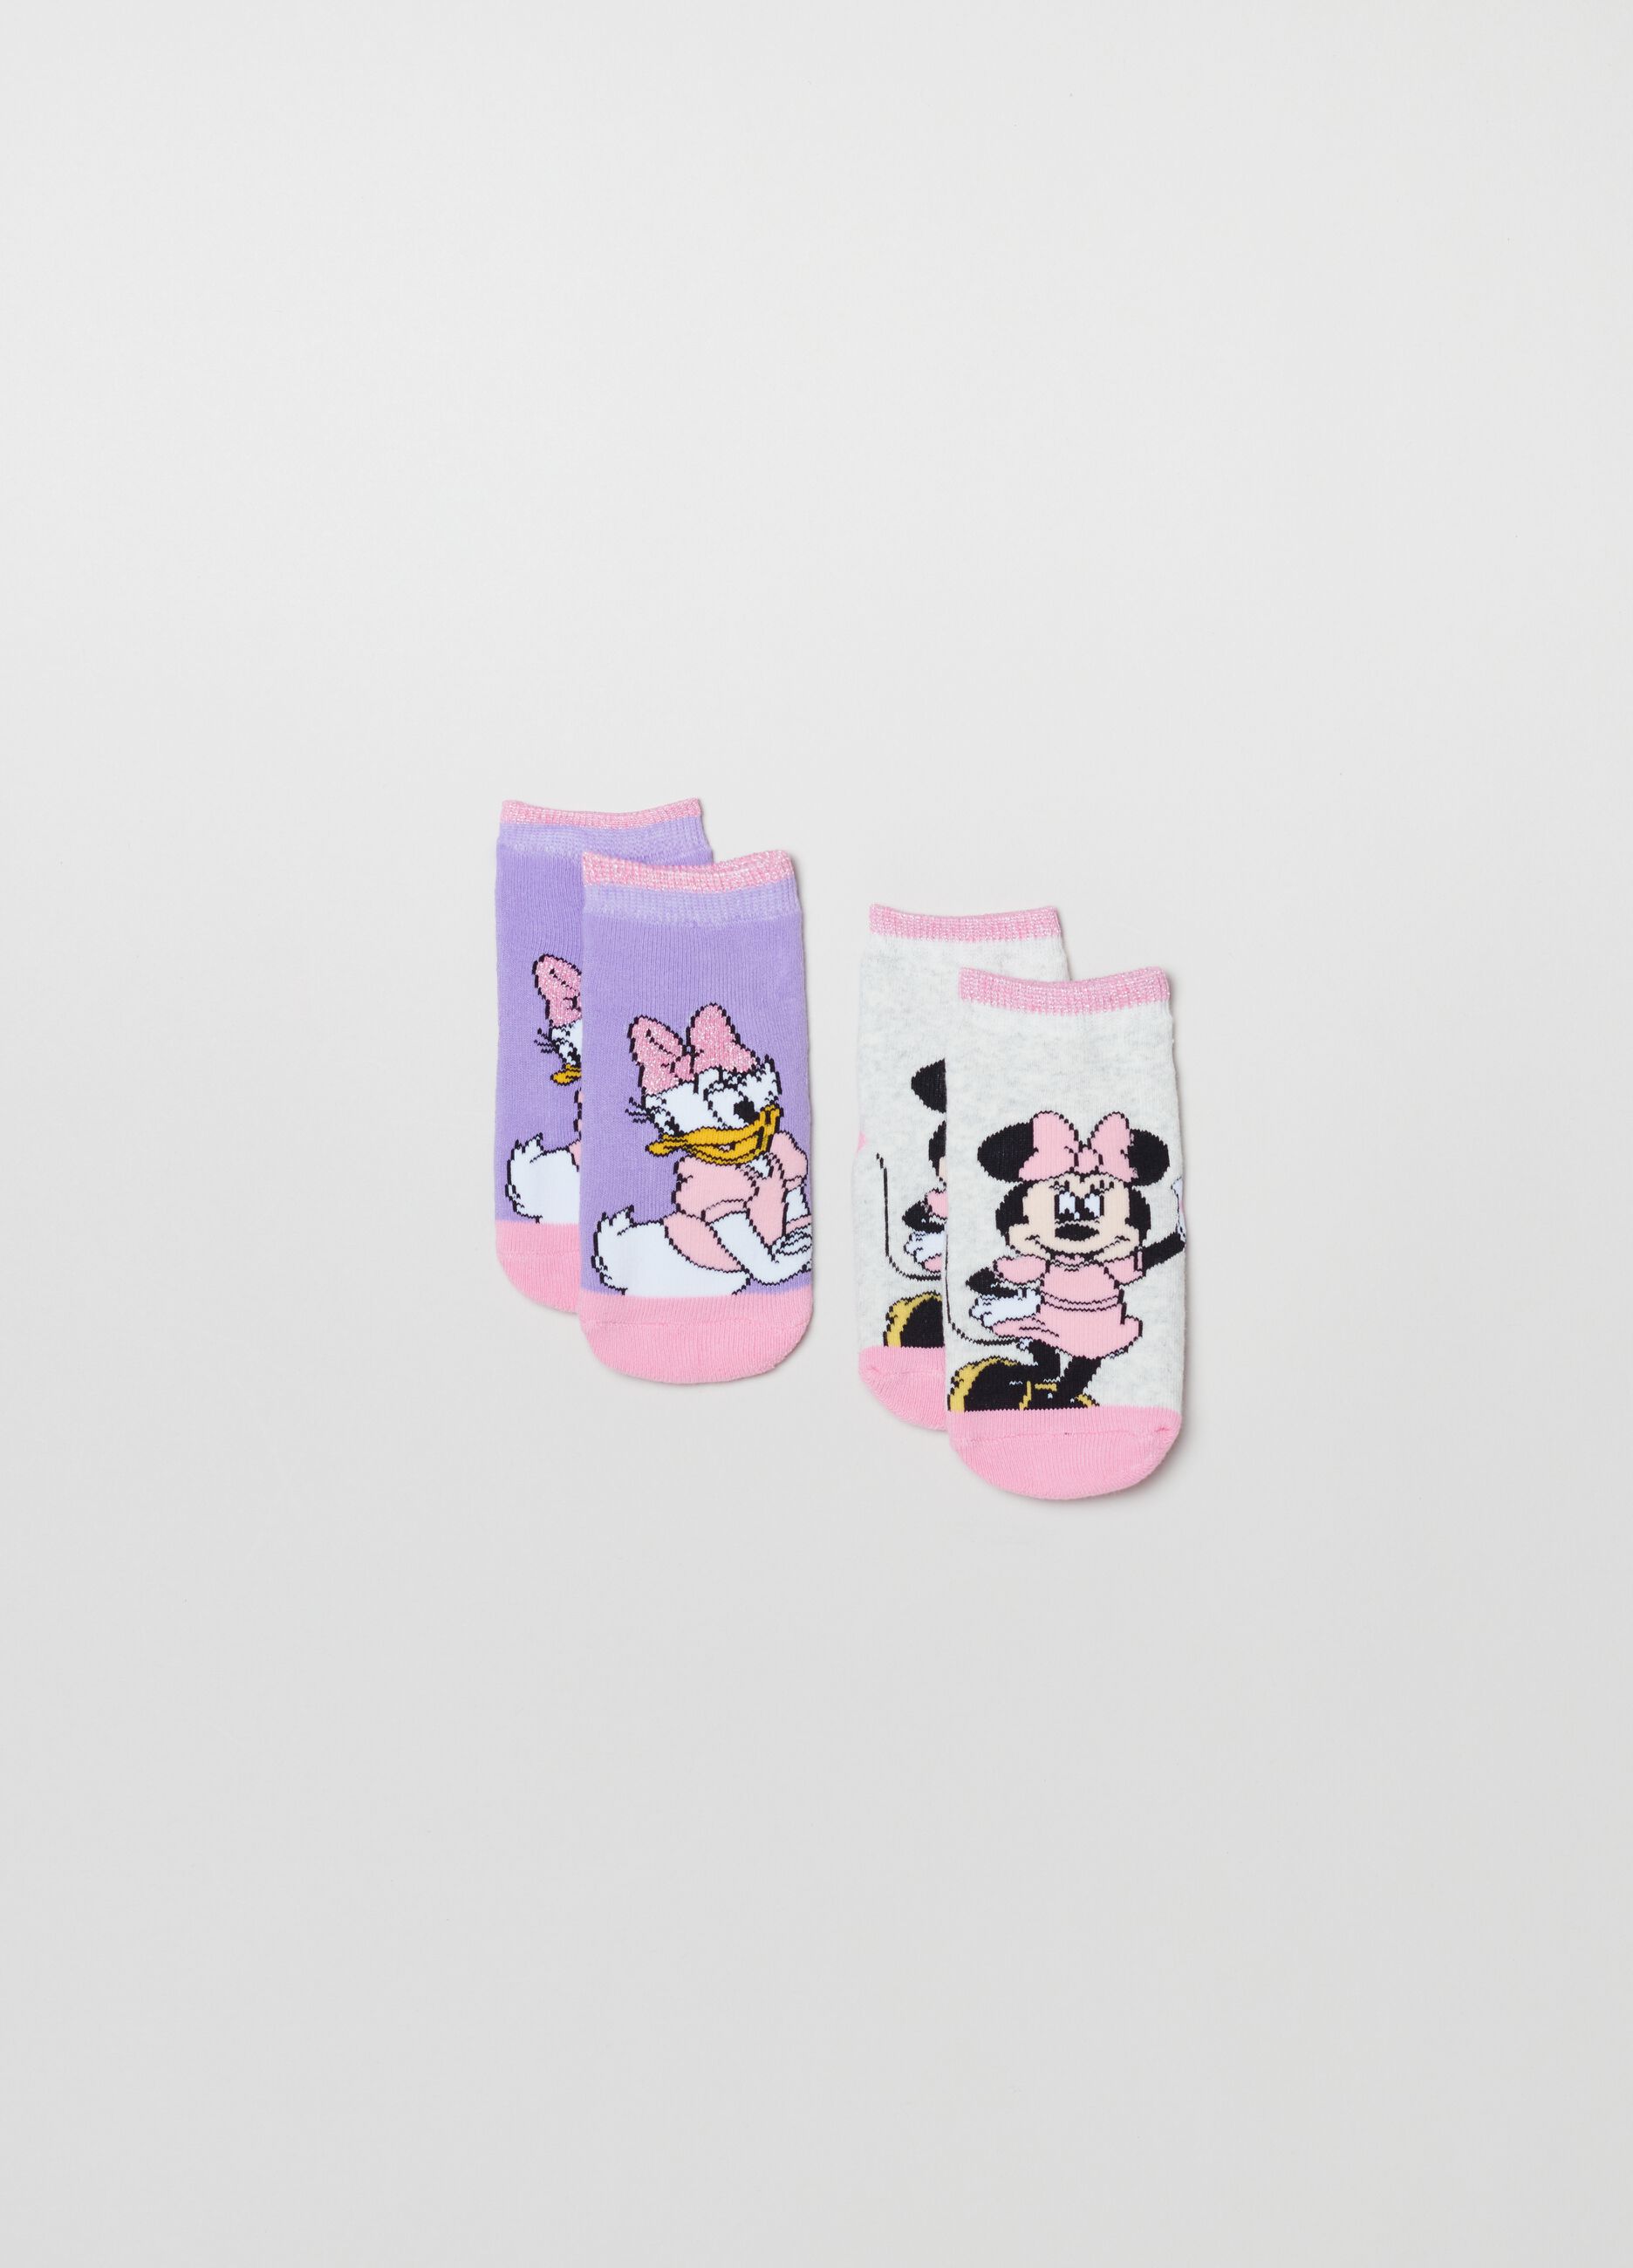 Seeing Pink - Short & Standard Work Socks - 2pair set